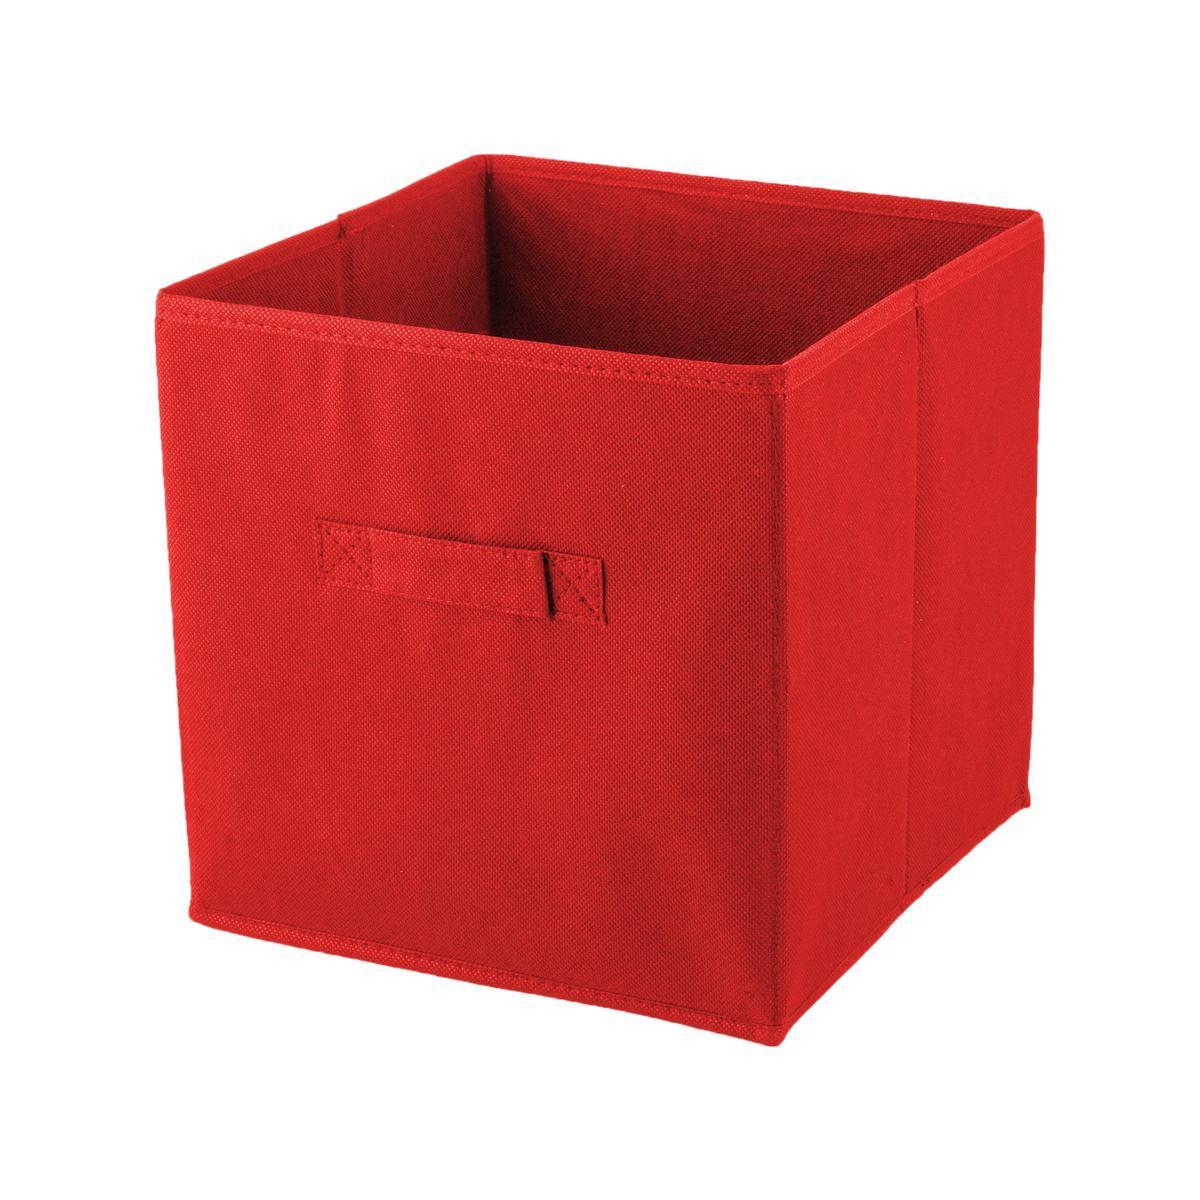 Cube de rangement - Rouge